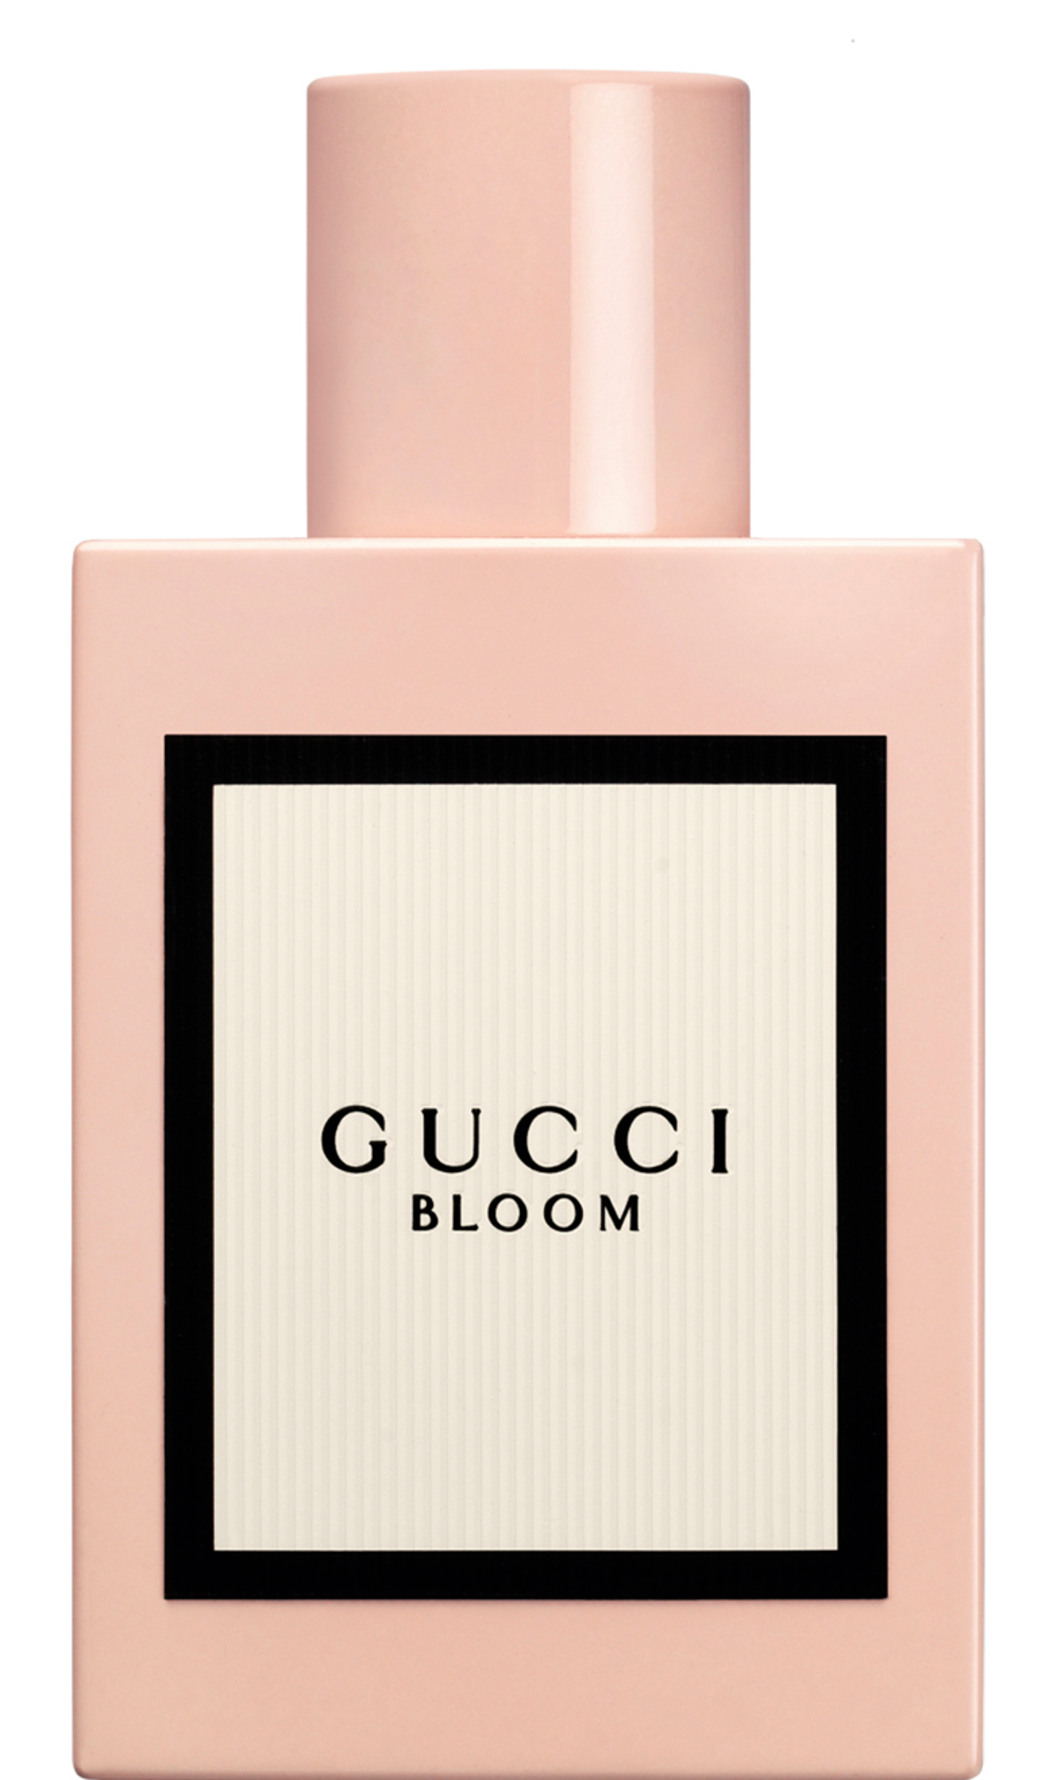 Gucci bloom eau de parfum ml. - Matas